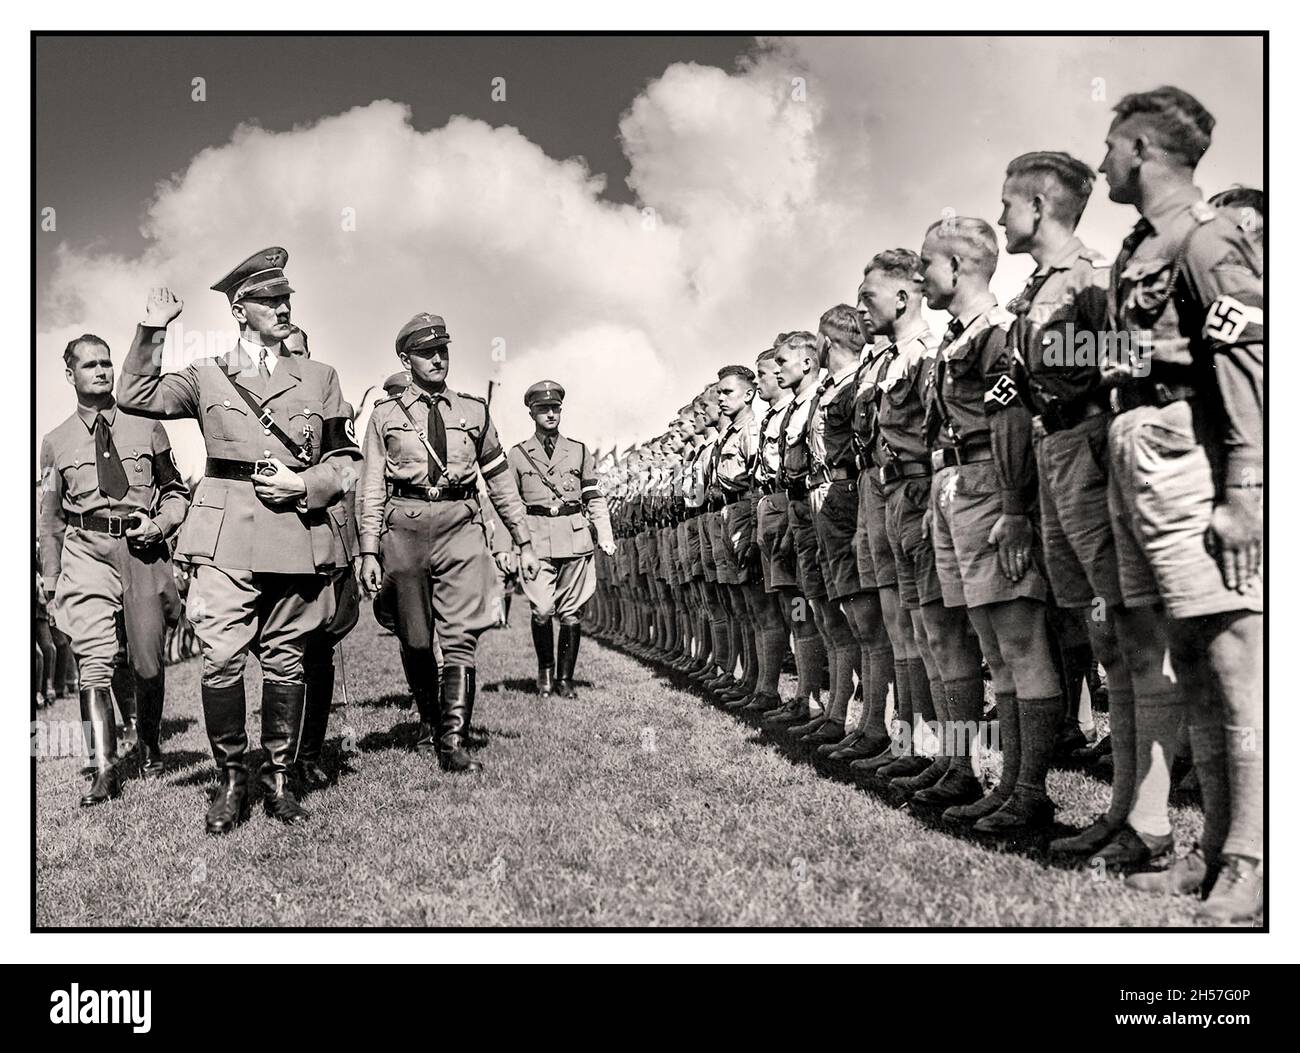 ADOLF HITLER avec le ministre de Reich Rudolf Hess salue une parade en uniforme de la Jeunesse d'Hitler 'Hitlerjugend' portant des brassards de swastika lors d'un rassemblement de Nuremberg des années 1930 en Allemagne nazie - Banque D'Images